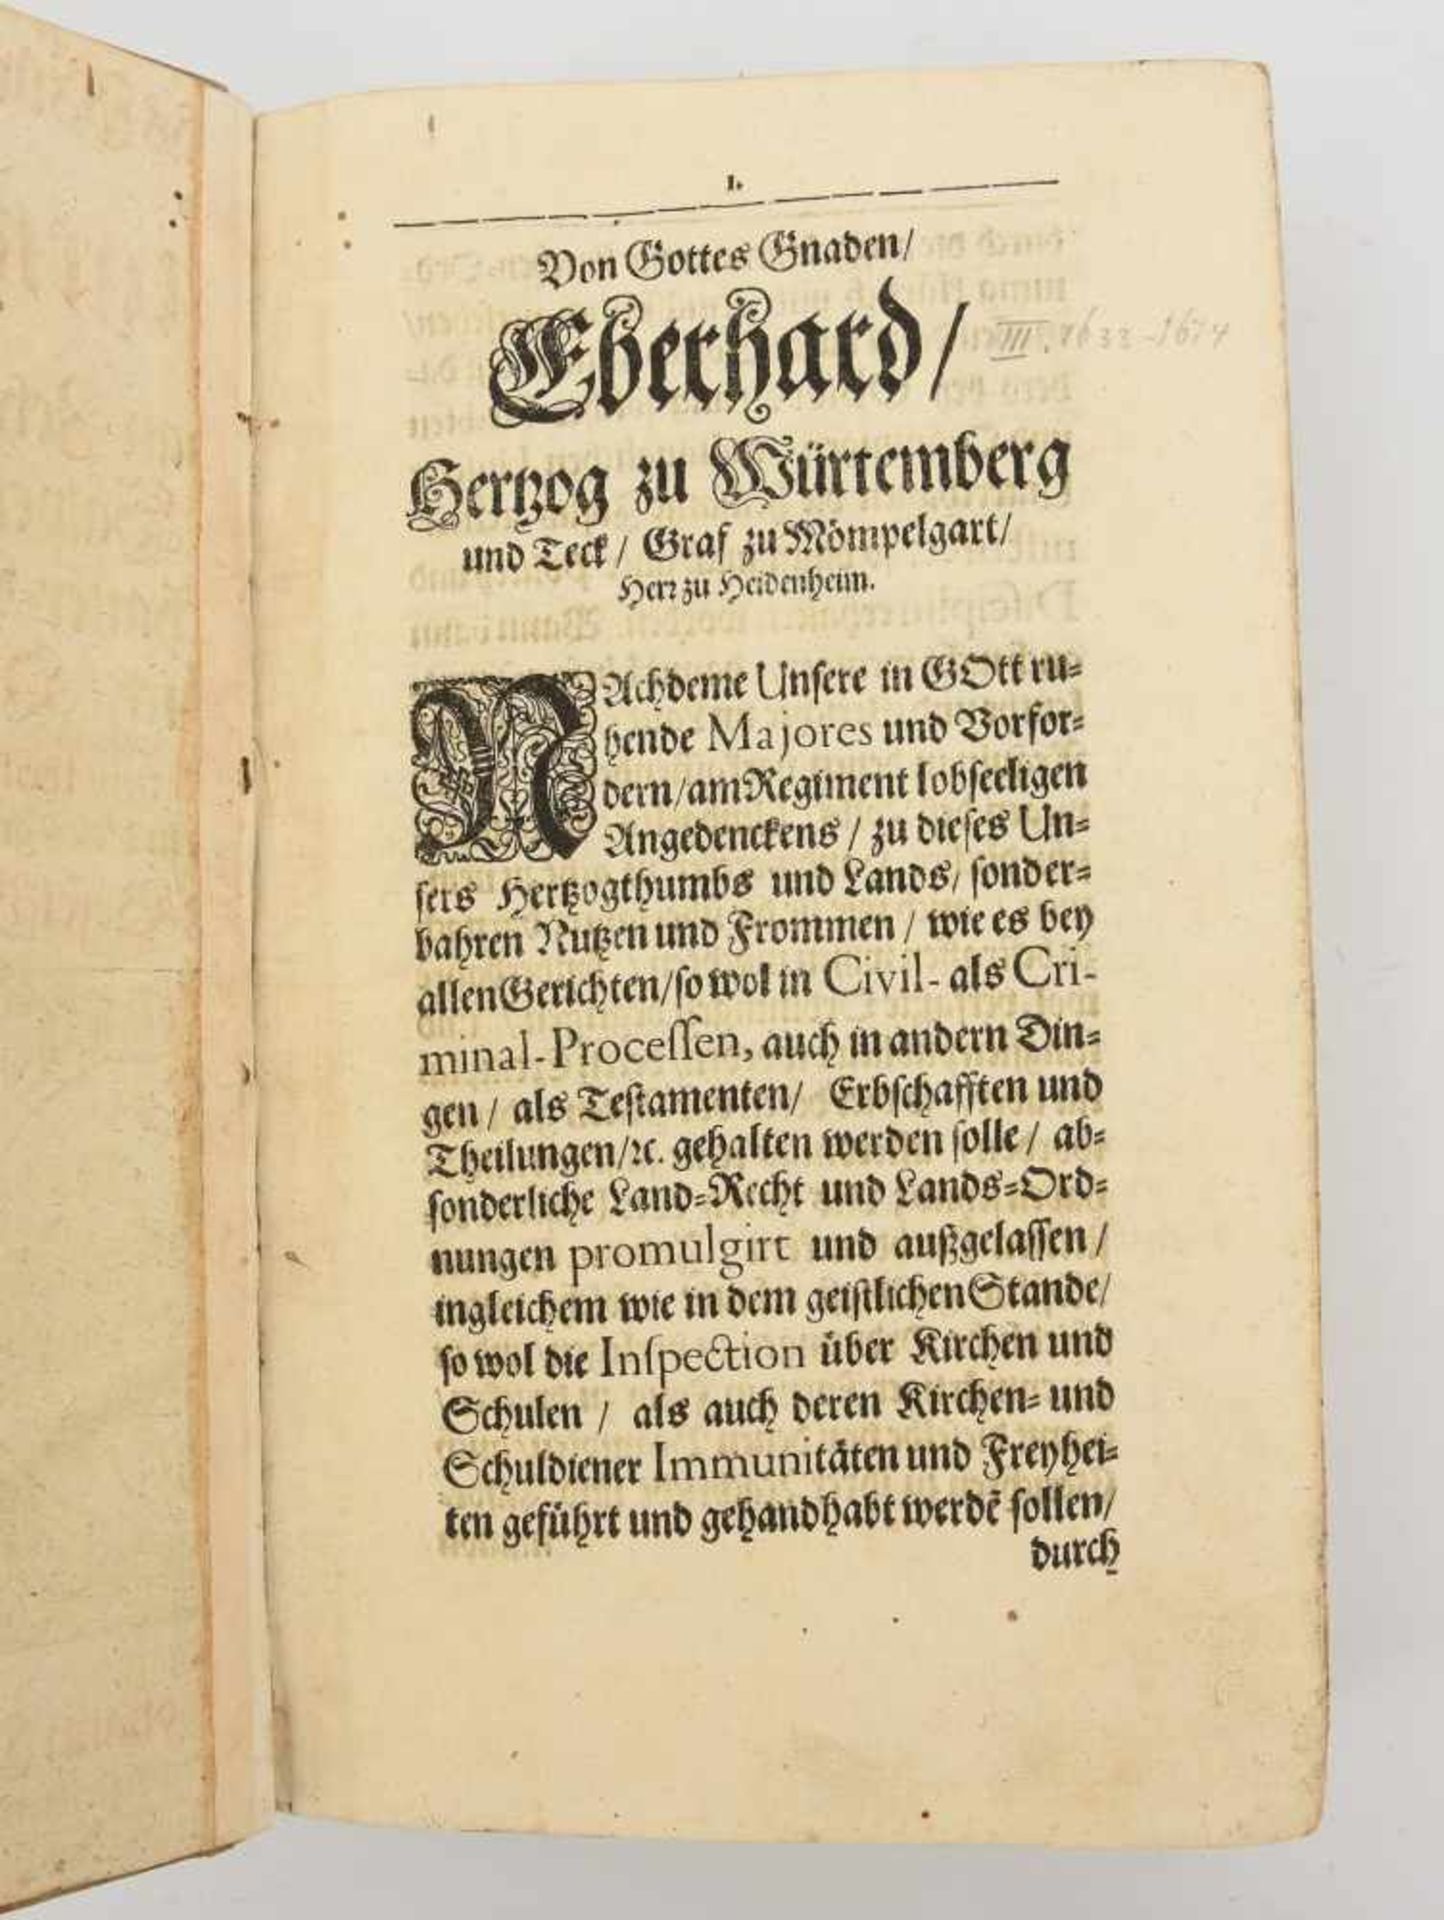 "WÜRTTEMBERGISCHE VERORDNUNGEN", in Schweinsleder gebundenes Papier, Württemberg 1670 Für Herzog " - Bild 4 aus 4